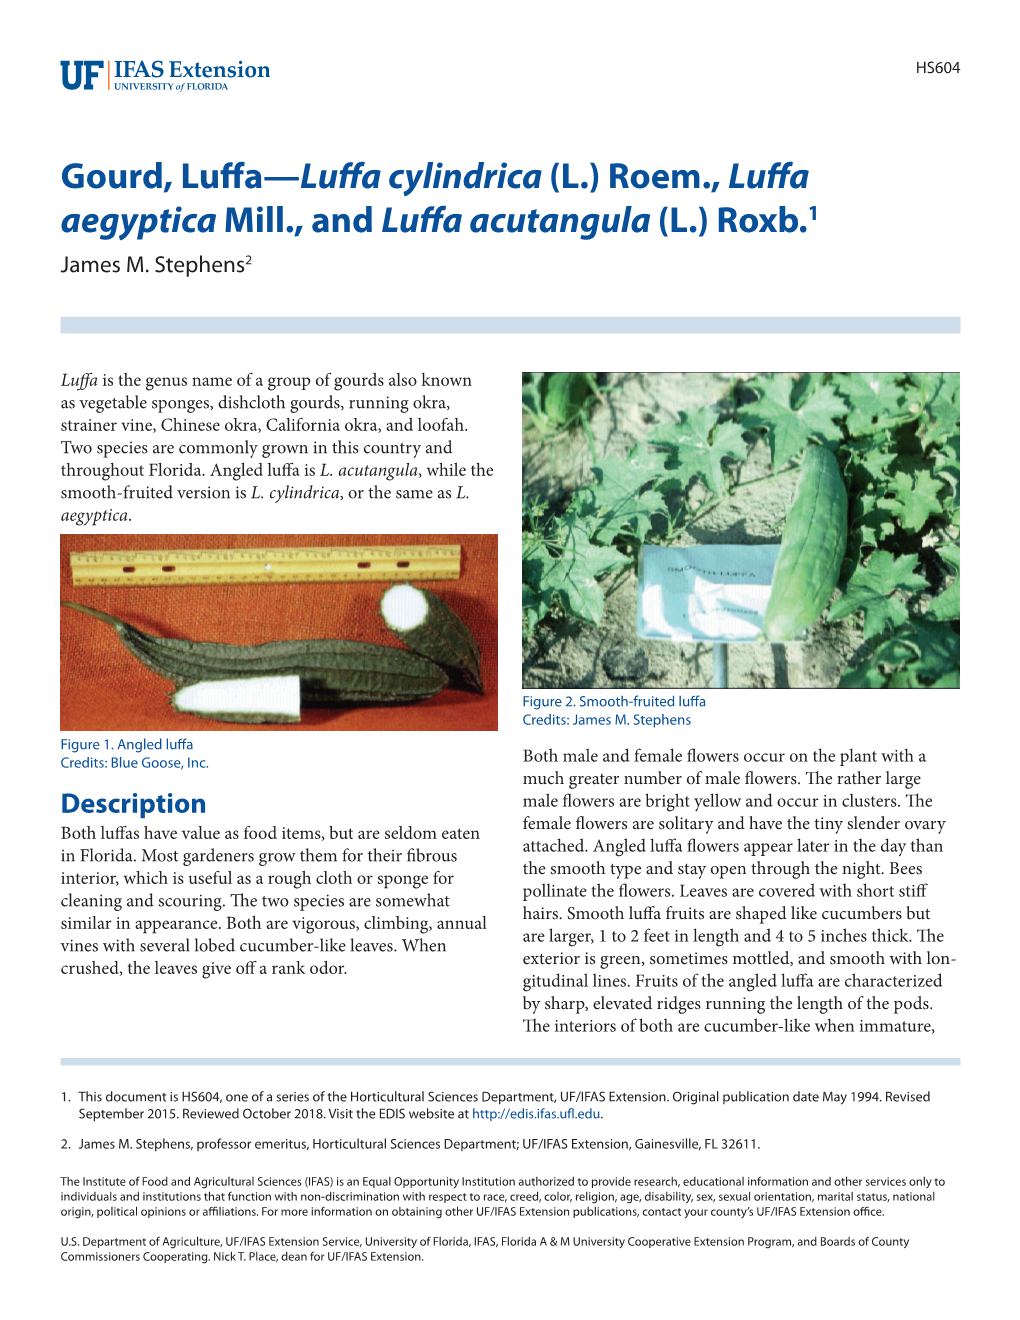 Gourd, Luffa—Luffa Cylindrica(L.) Roem., Luffa Aegyptica Mill., and Luffa Acutangula (L.) Roxb.1 James M